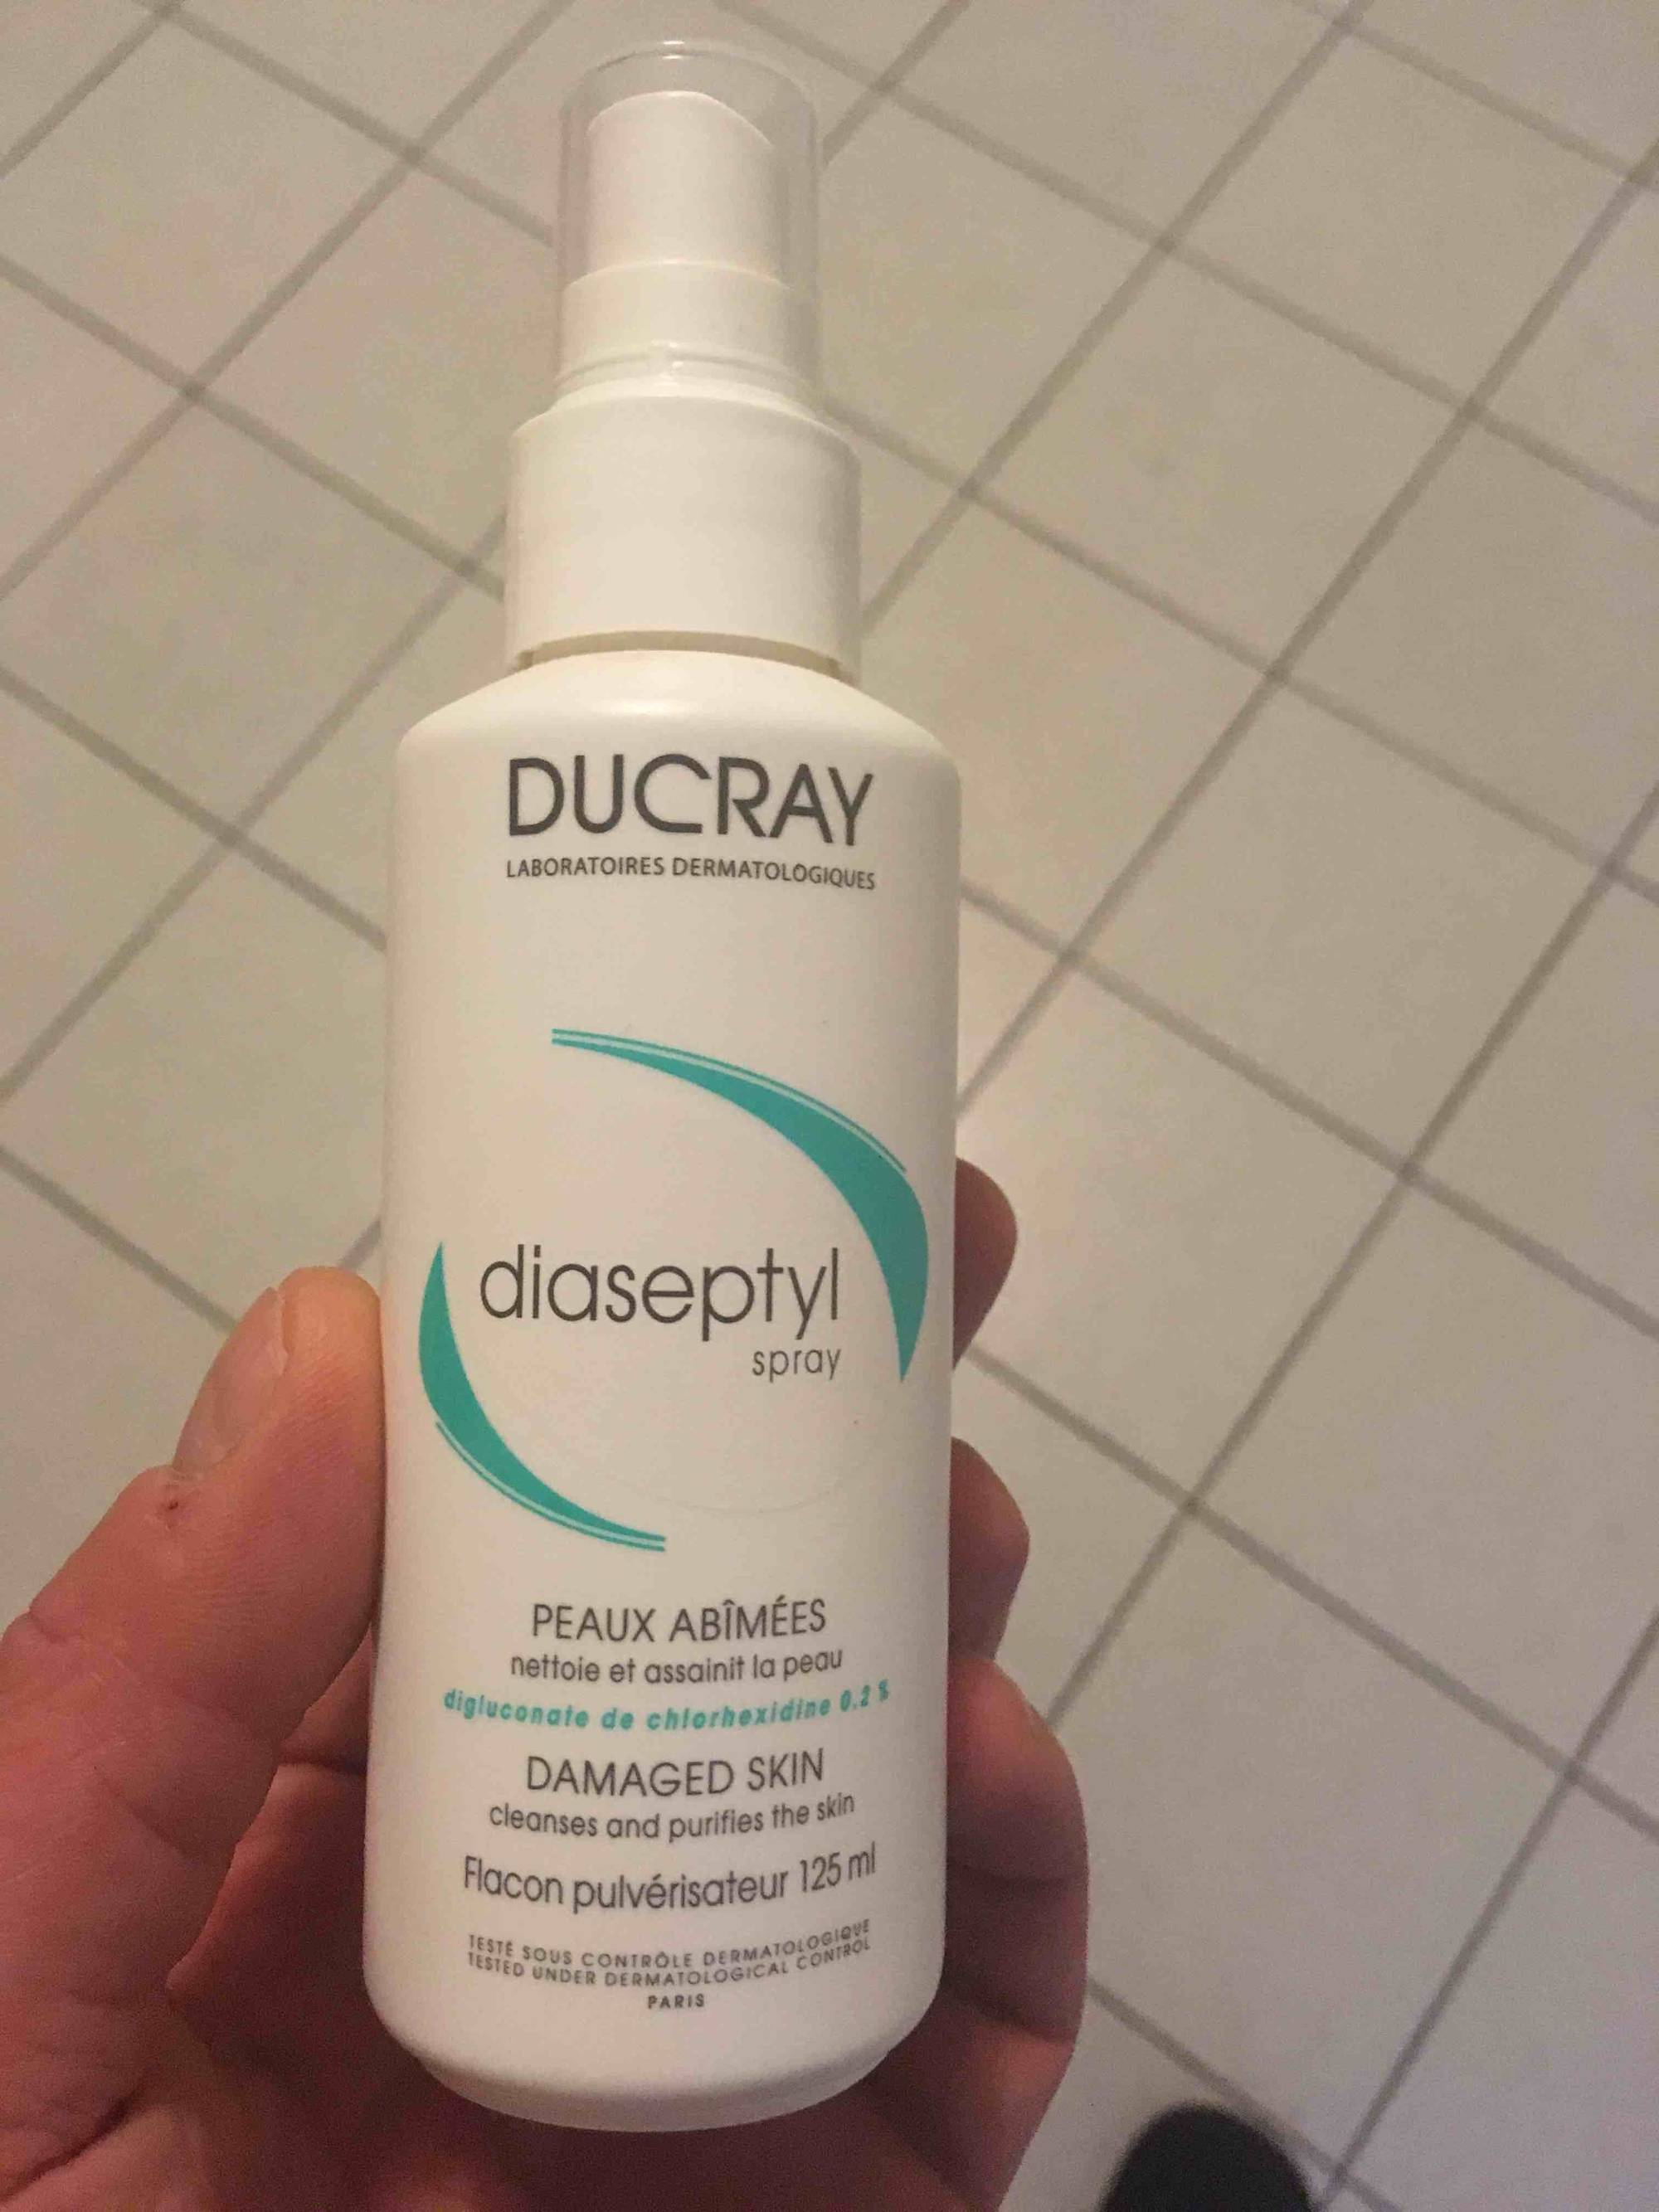 DUCRAY - Diaseptyl spray - Nettoie et assainit la peau, peaux abîmées